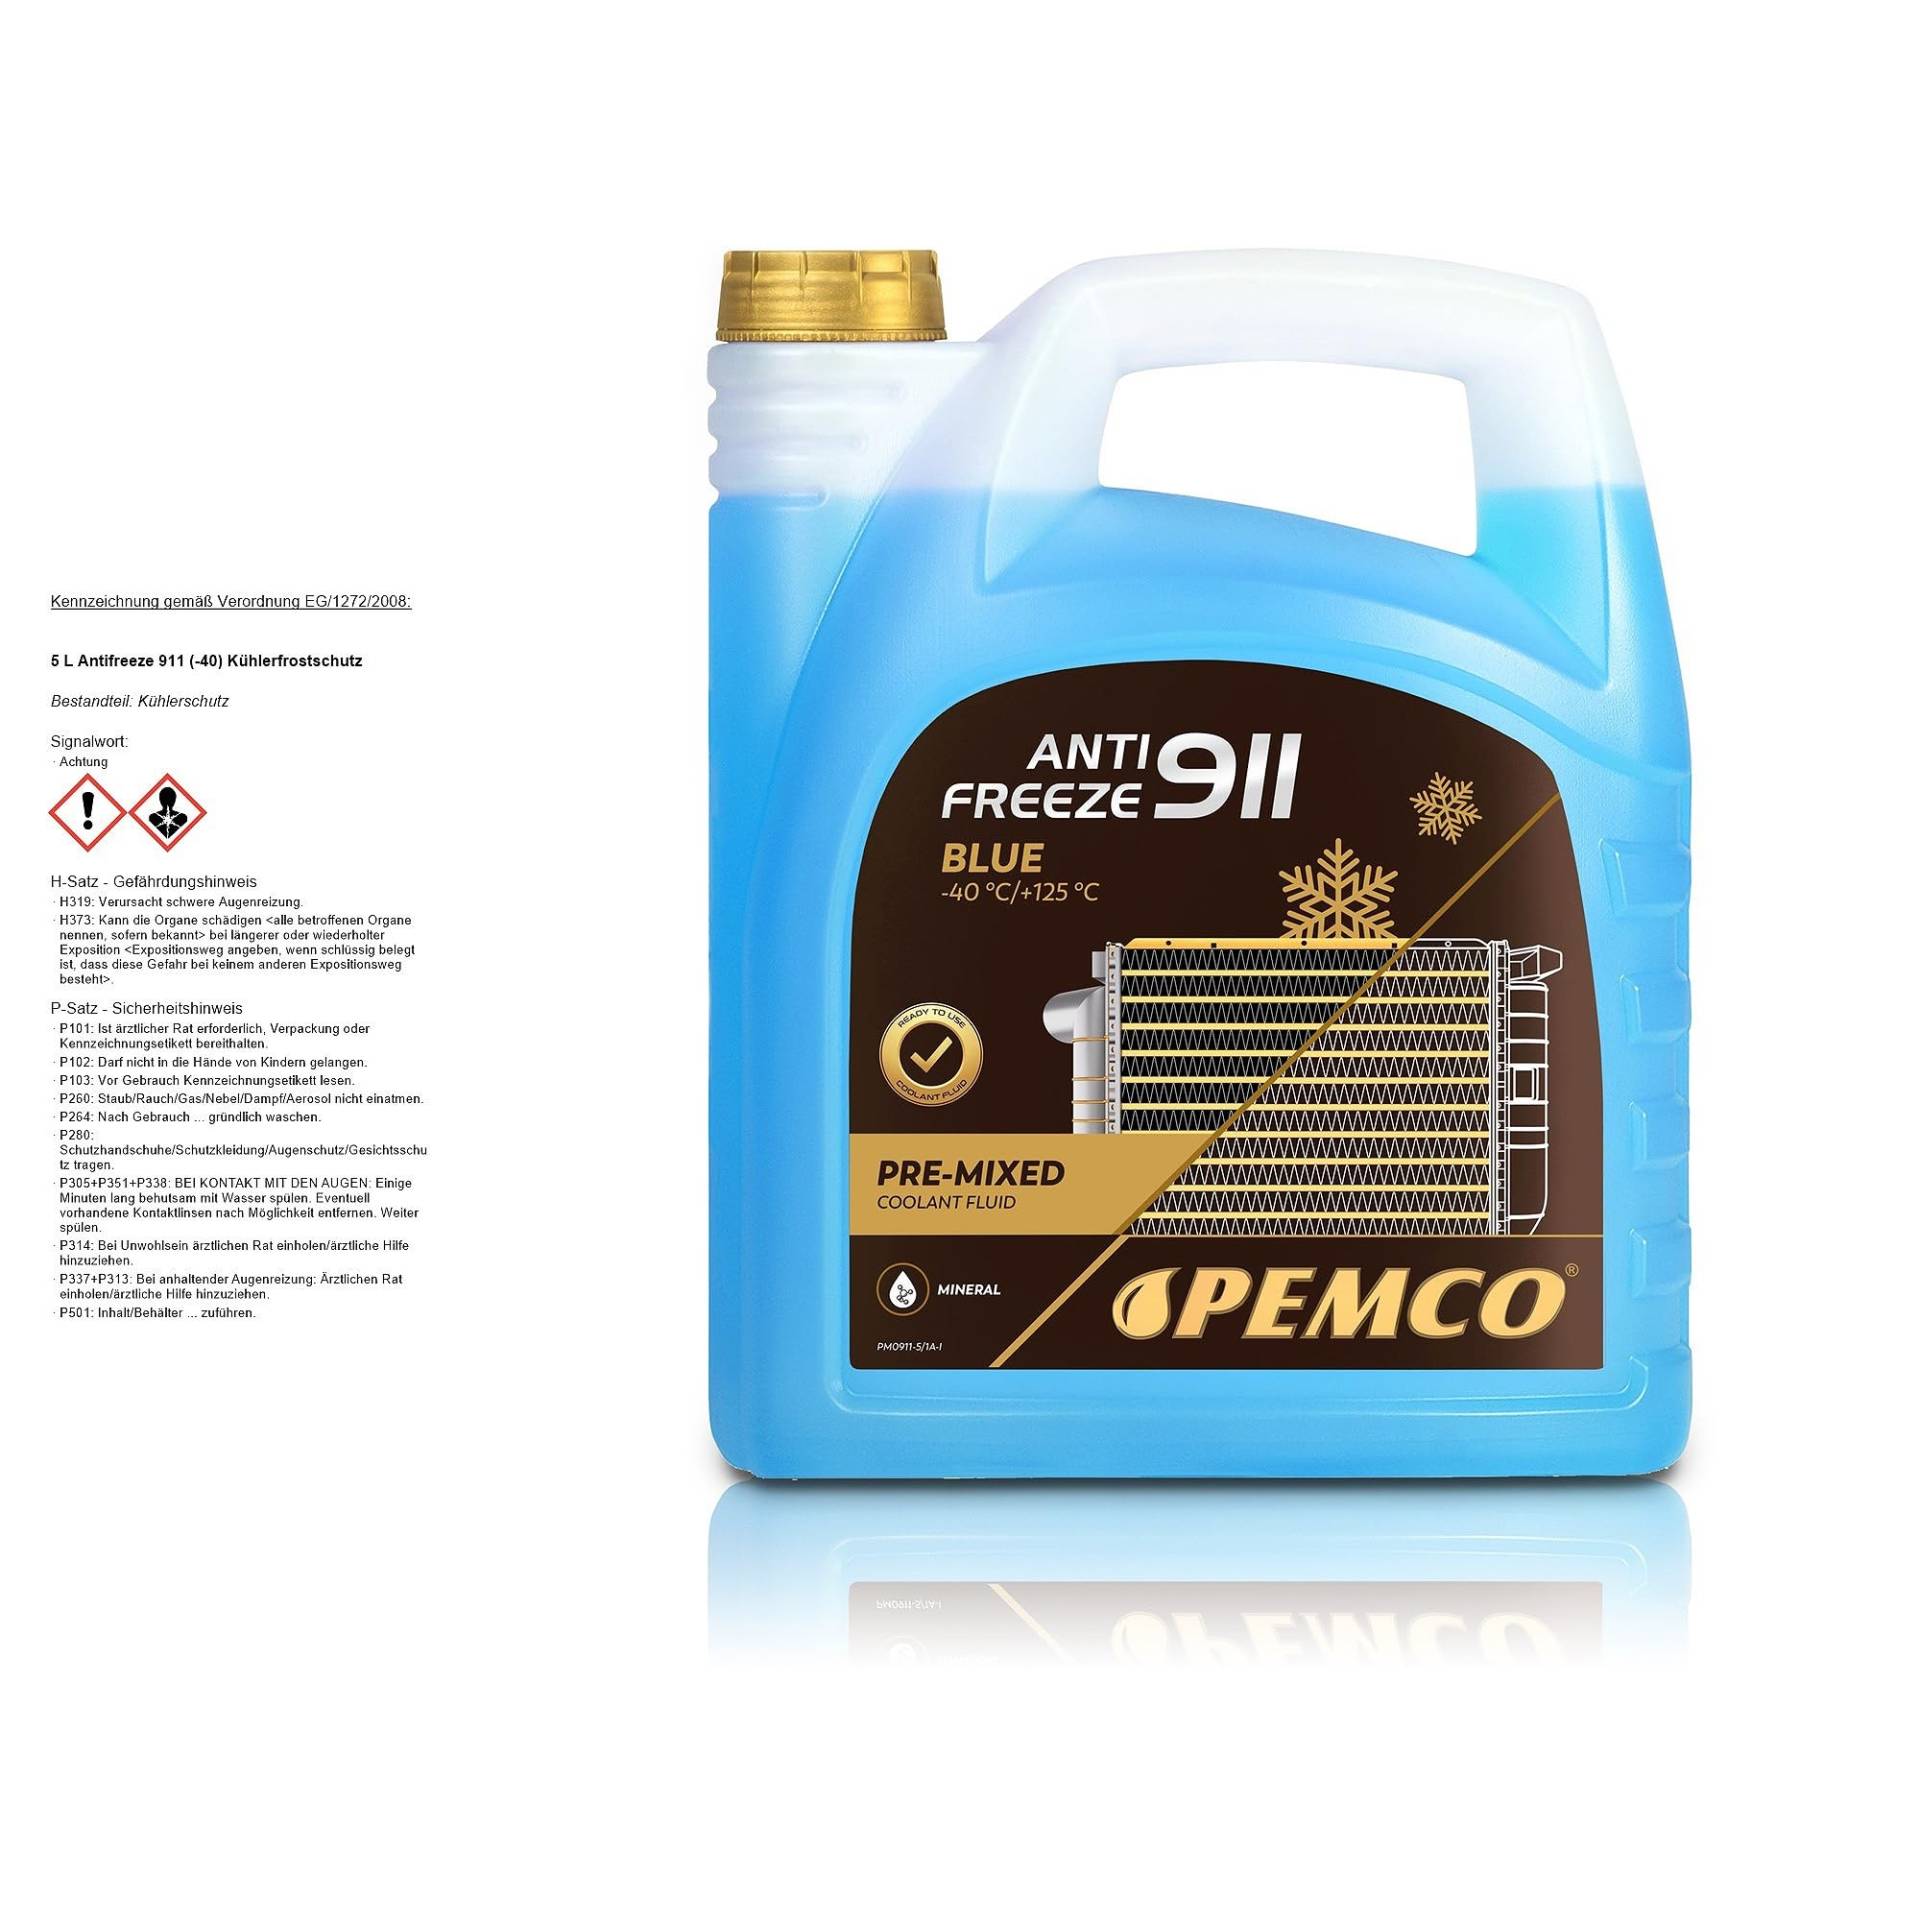 PEMCO 5 L Antifreeze 911 (-40) Kühlerfrostschutz von Pemco